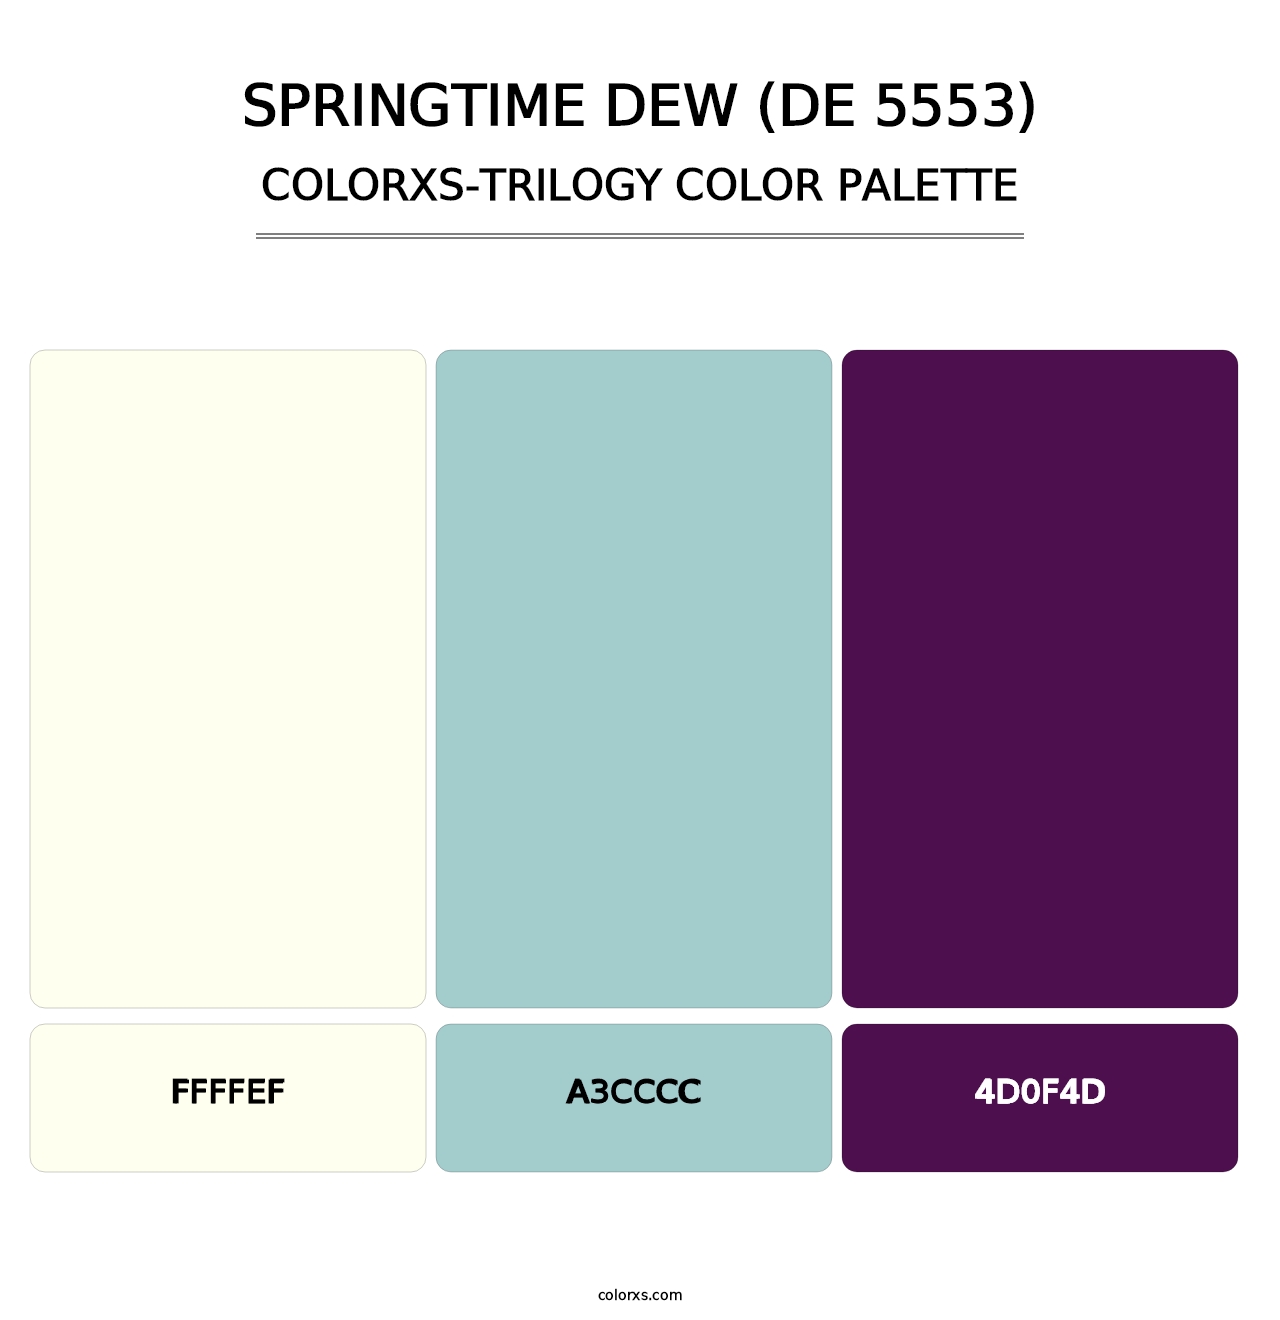 Springtime Dew (DE 5553) - Colorxs Trilogy Palette